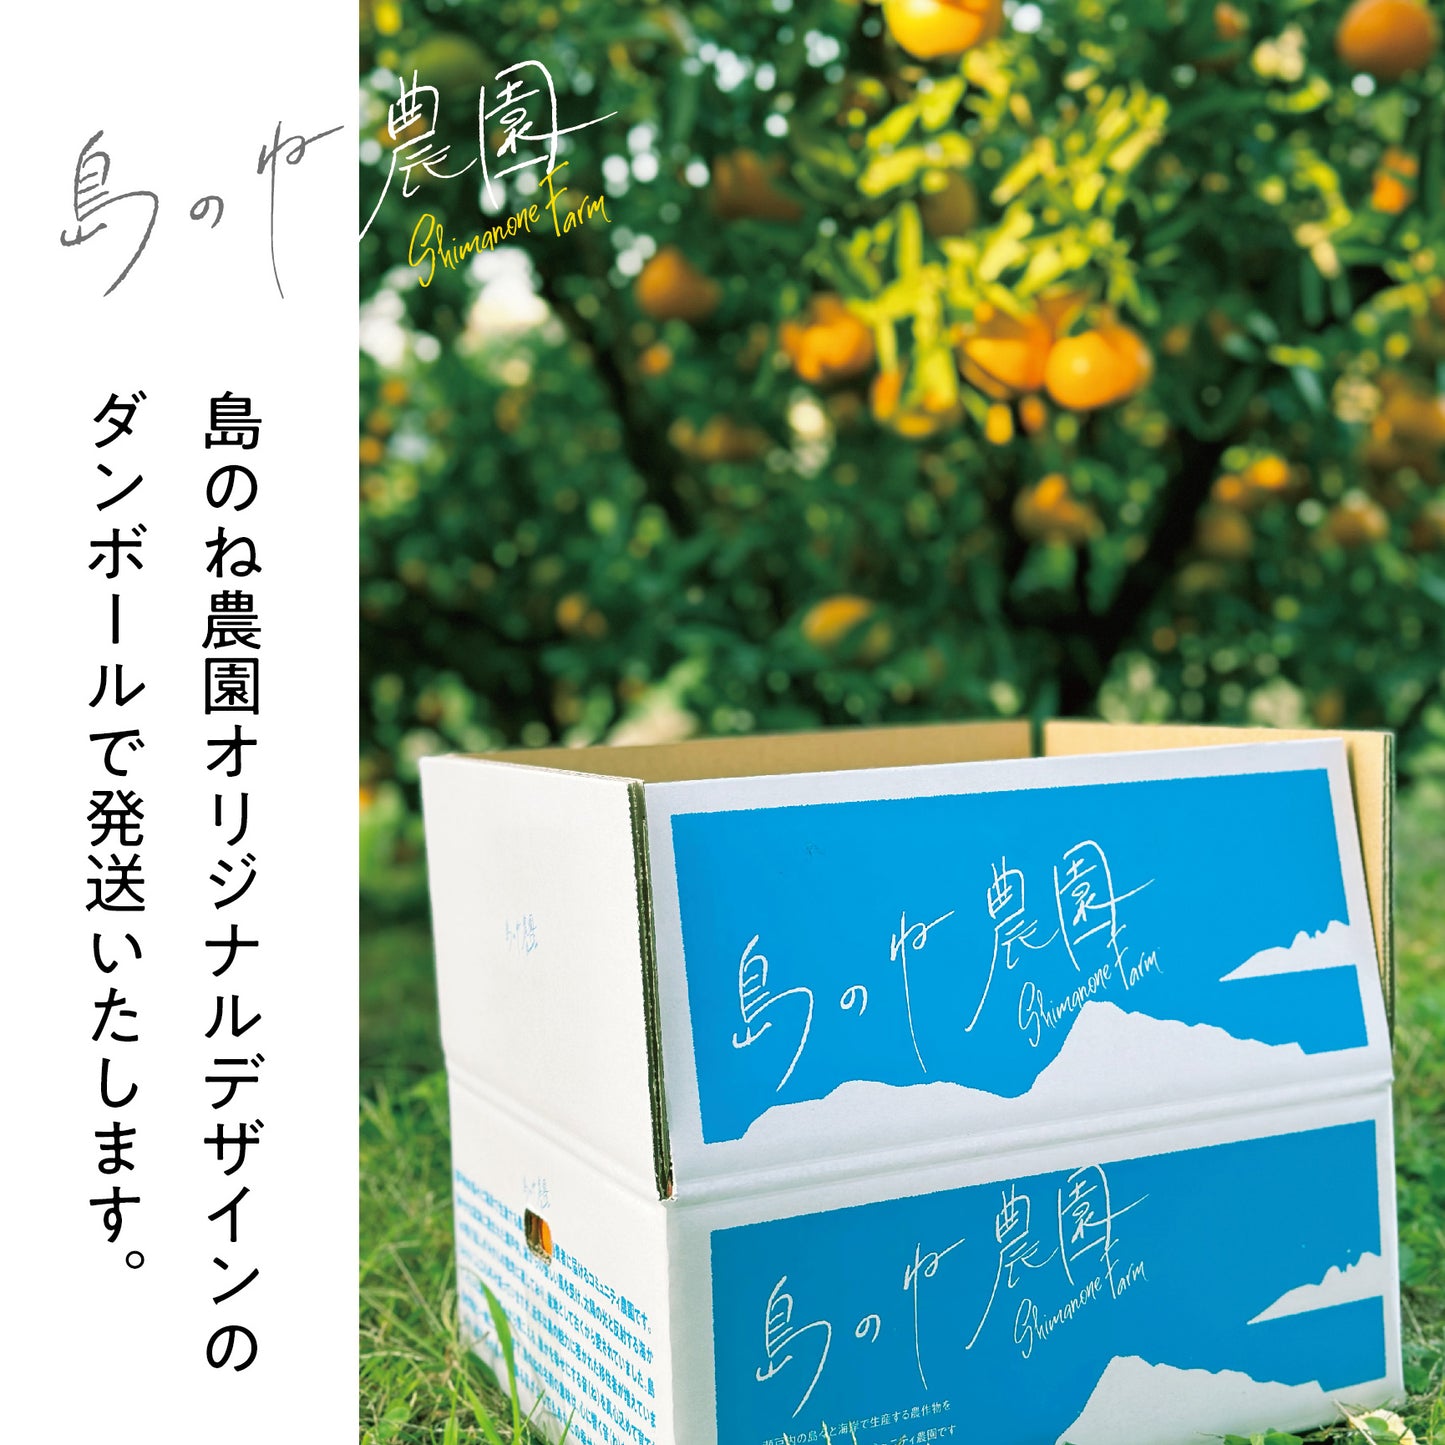 有機栽培レモン【訳あり/瀬戸内産/無農薬/3kg】